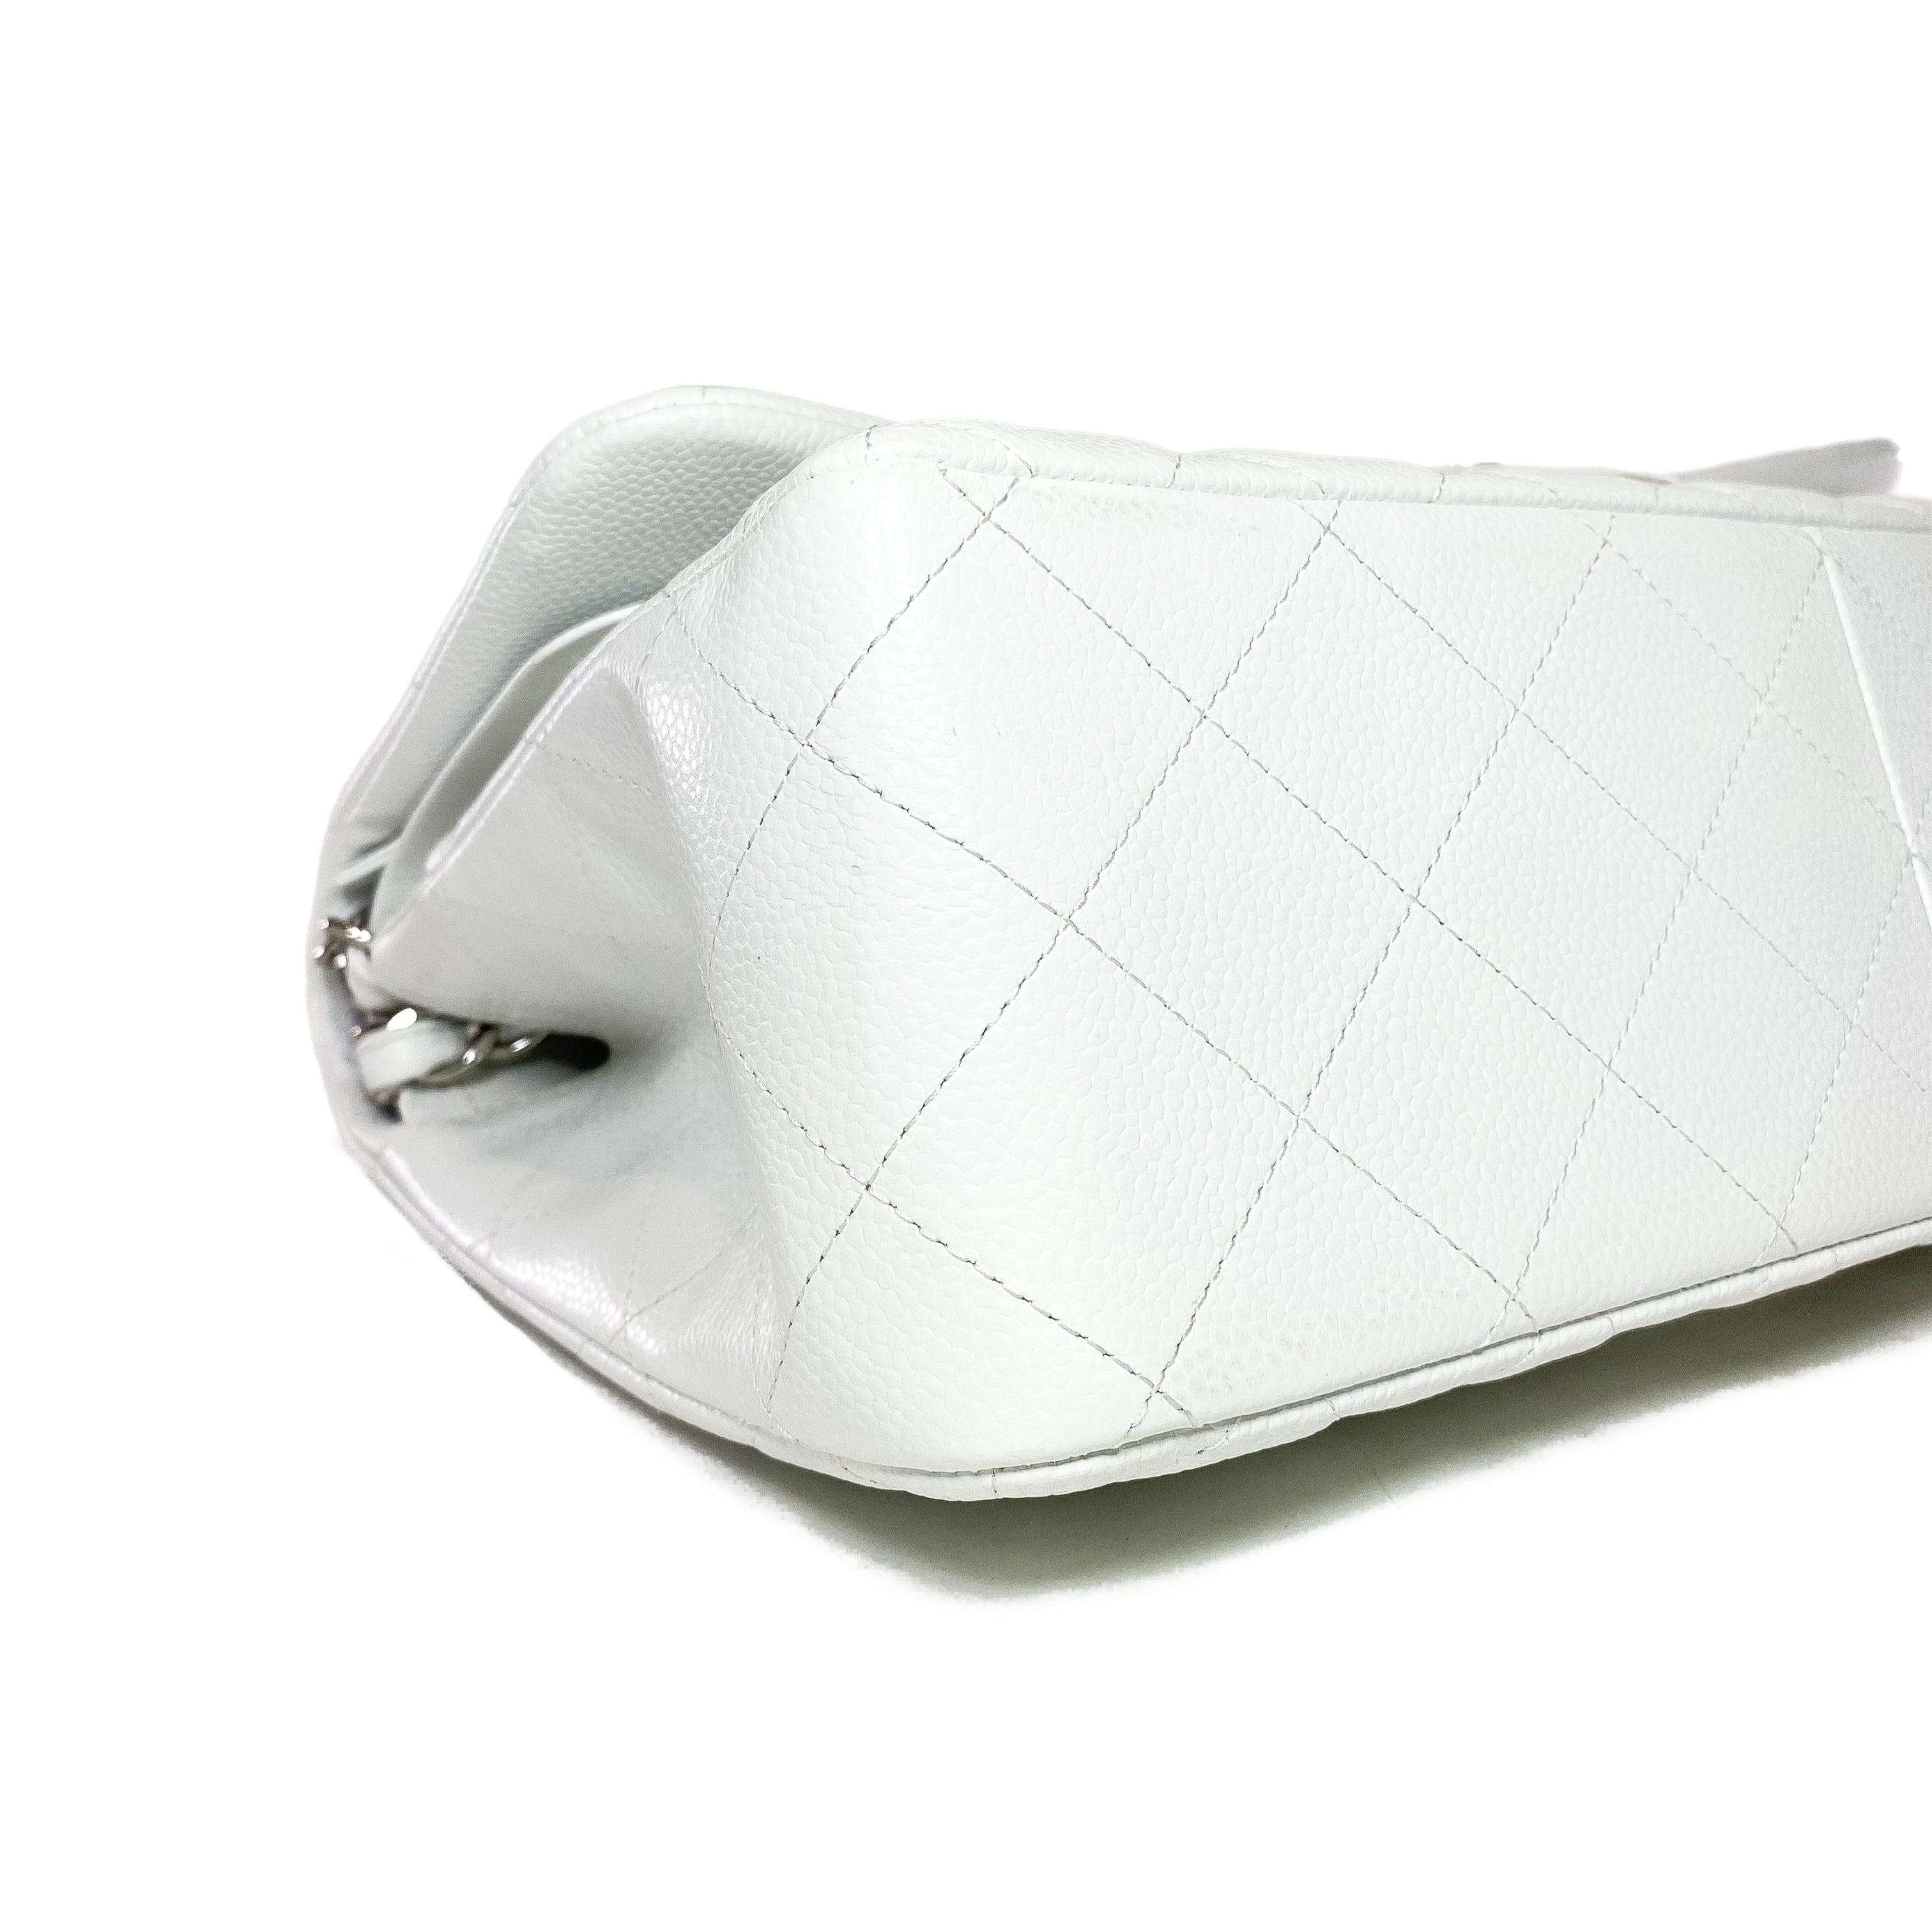 Chanel White Jumbo Double Flap Bag